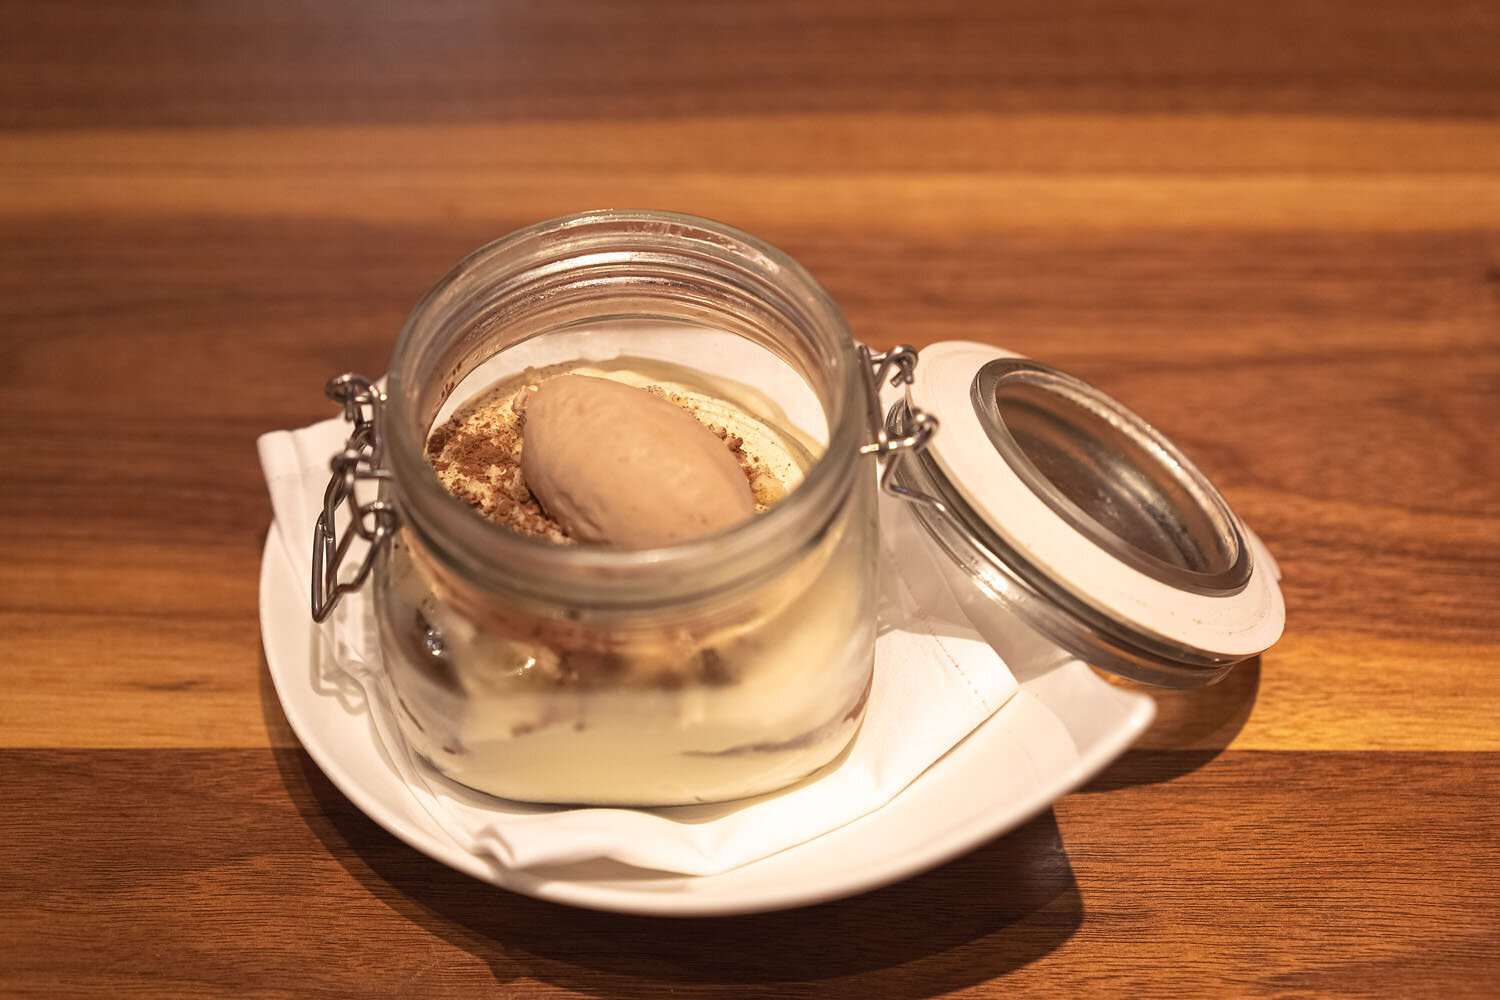  Dessert: Tiramisu 